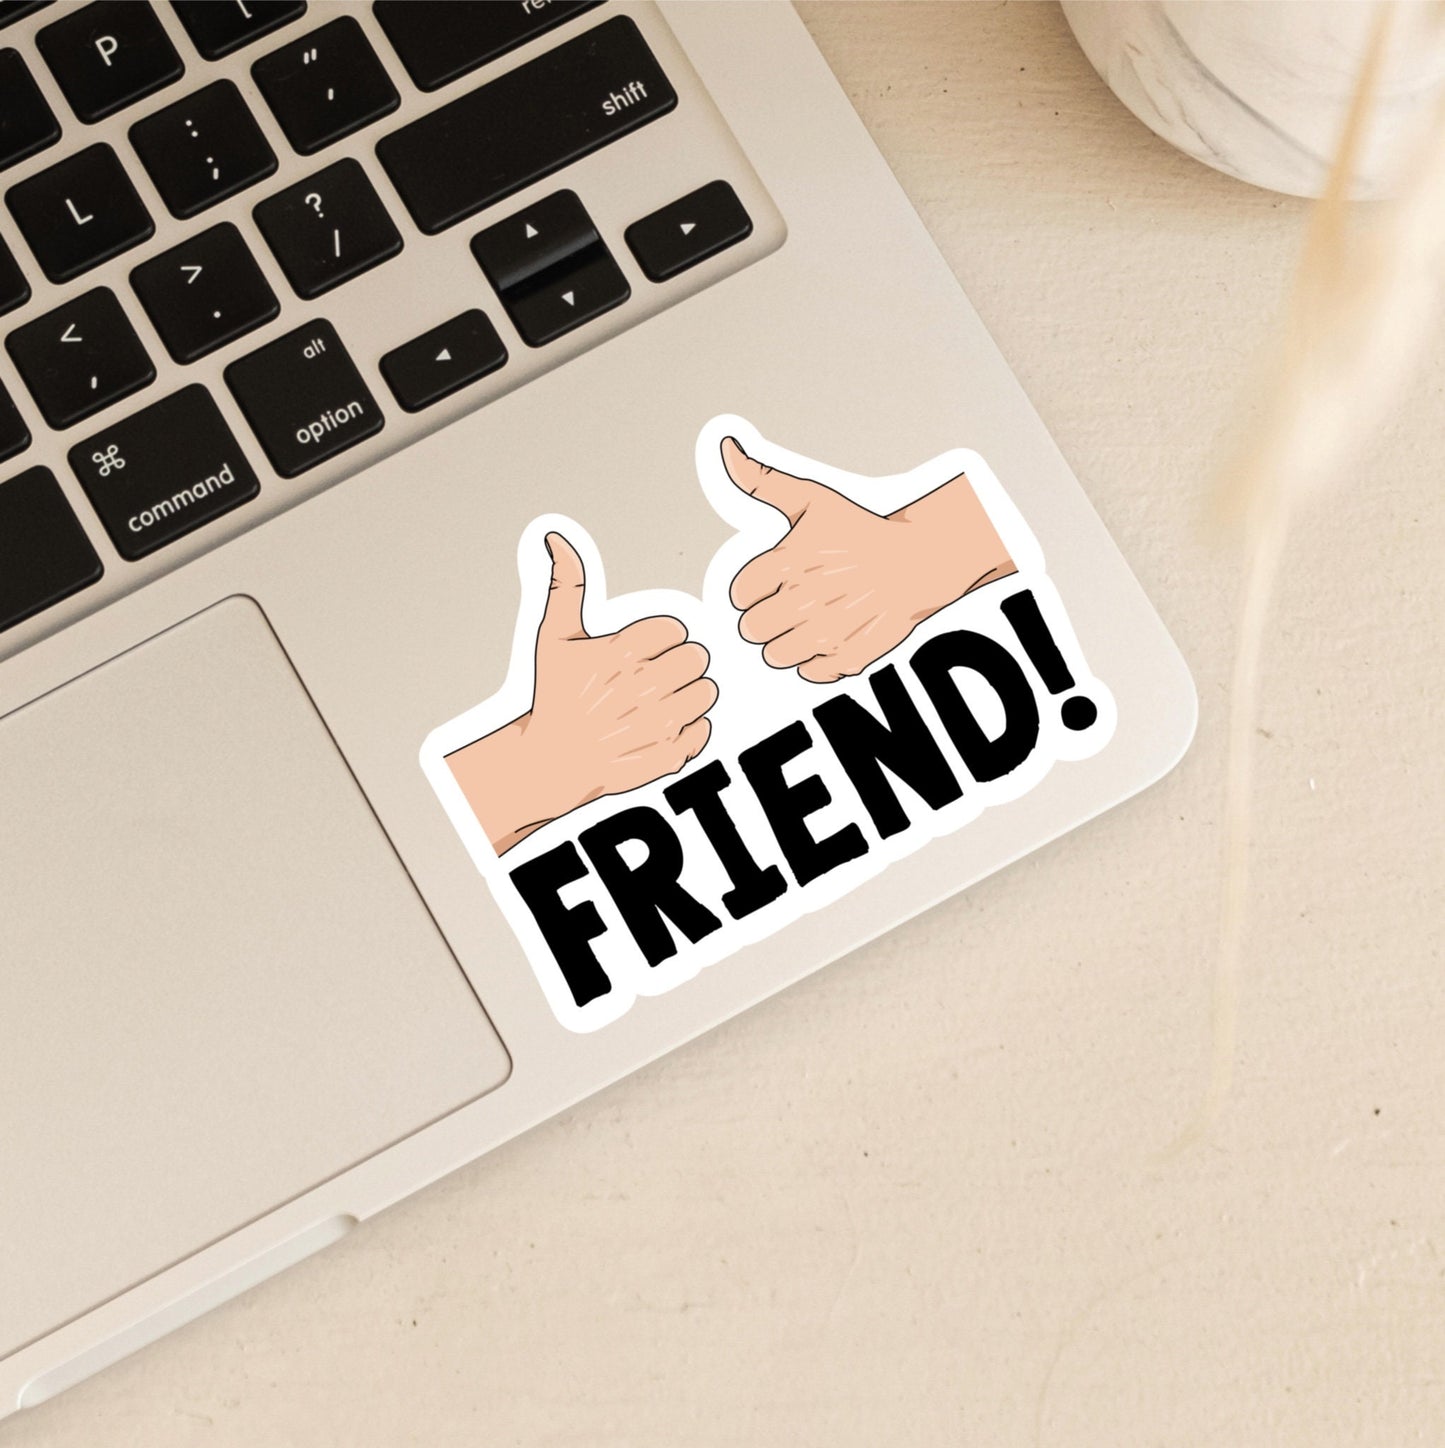 Ooh Friend! Thumbs Up Friend! | Inbetweeners | Inbetweeners Stickers | UK Stickers